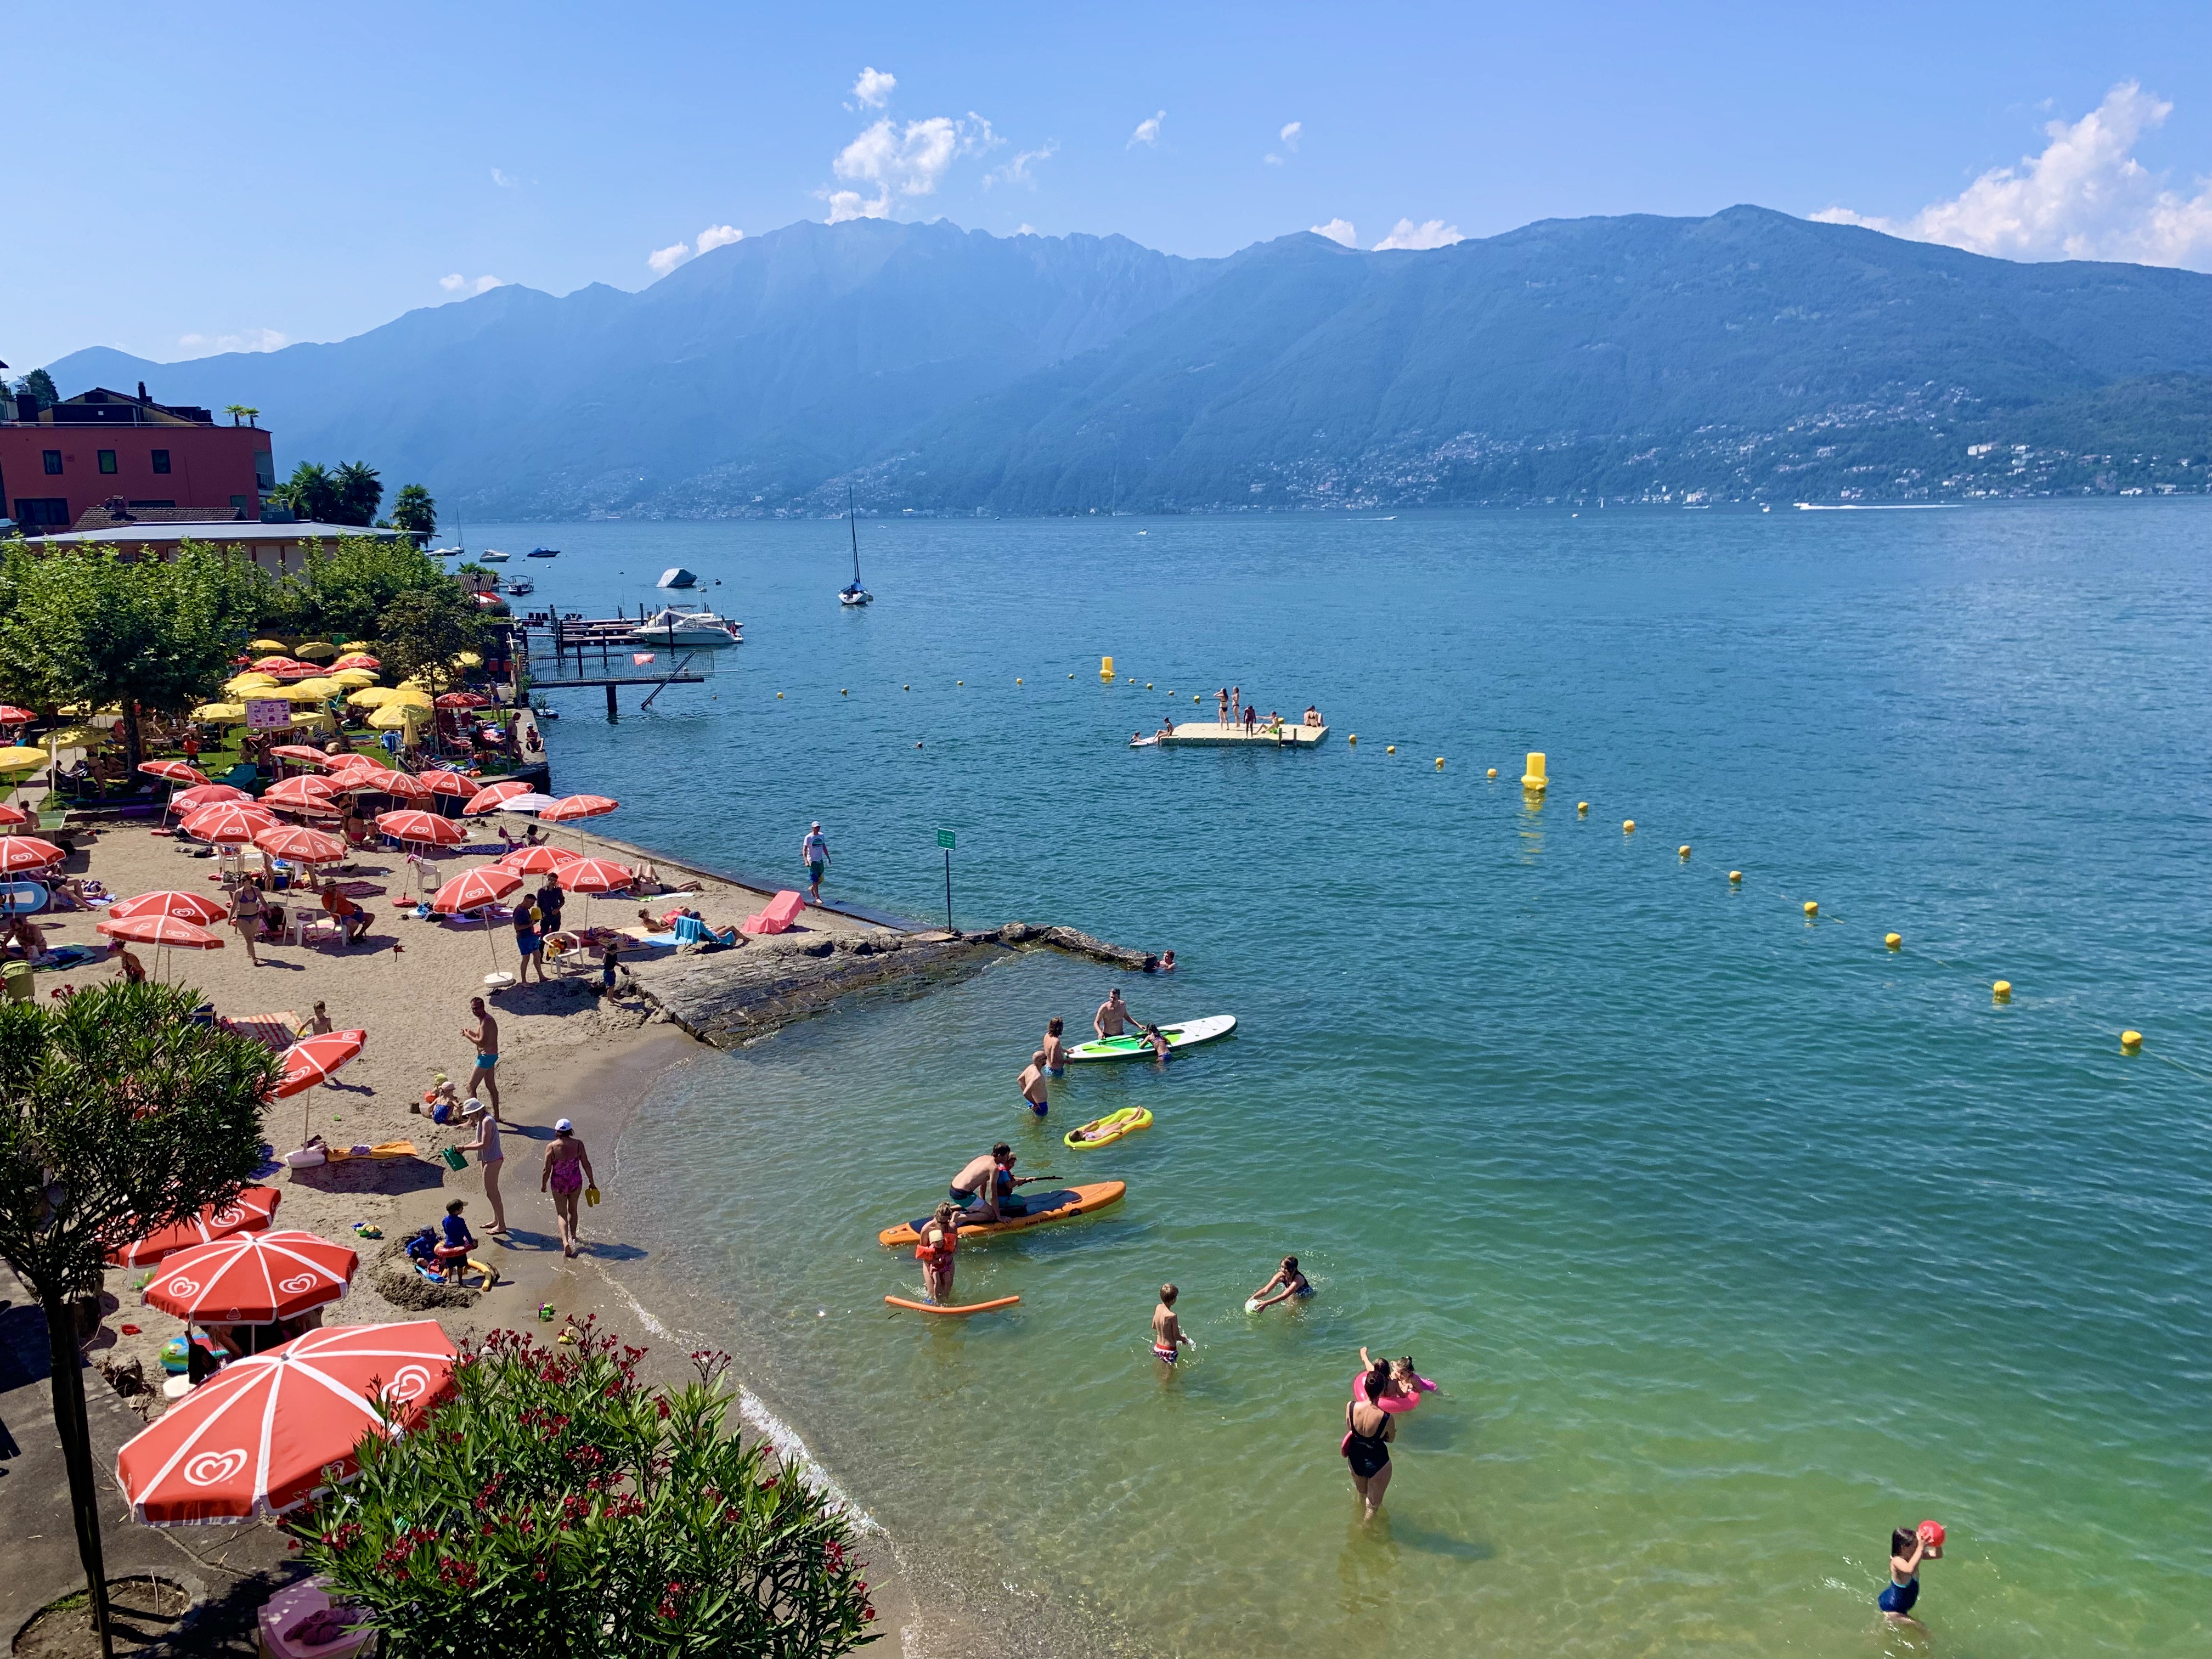 Quem disse que a Suíça não tem praia? Verão à beira do lago Maggiore